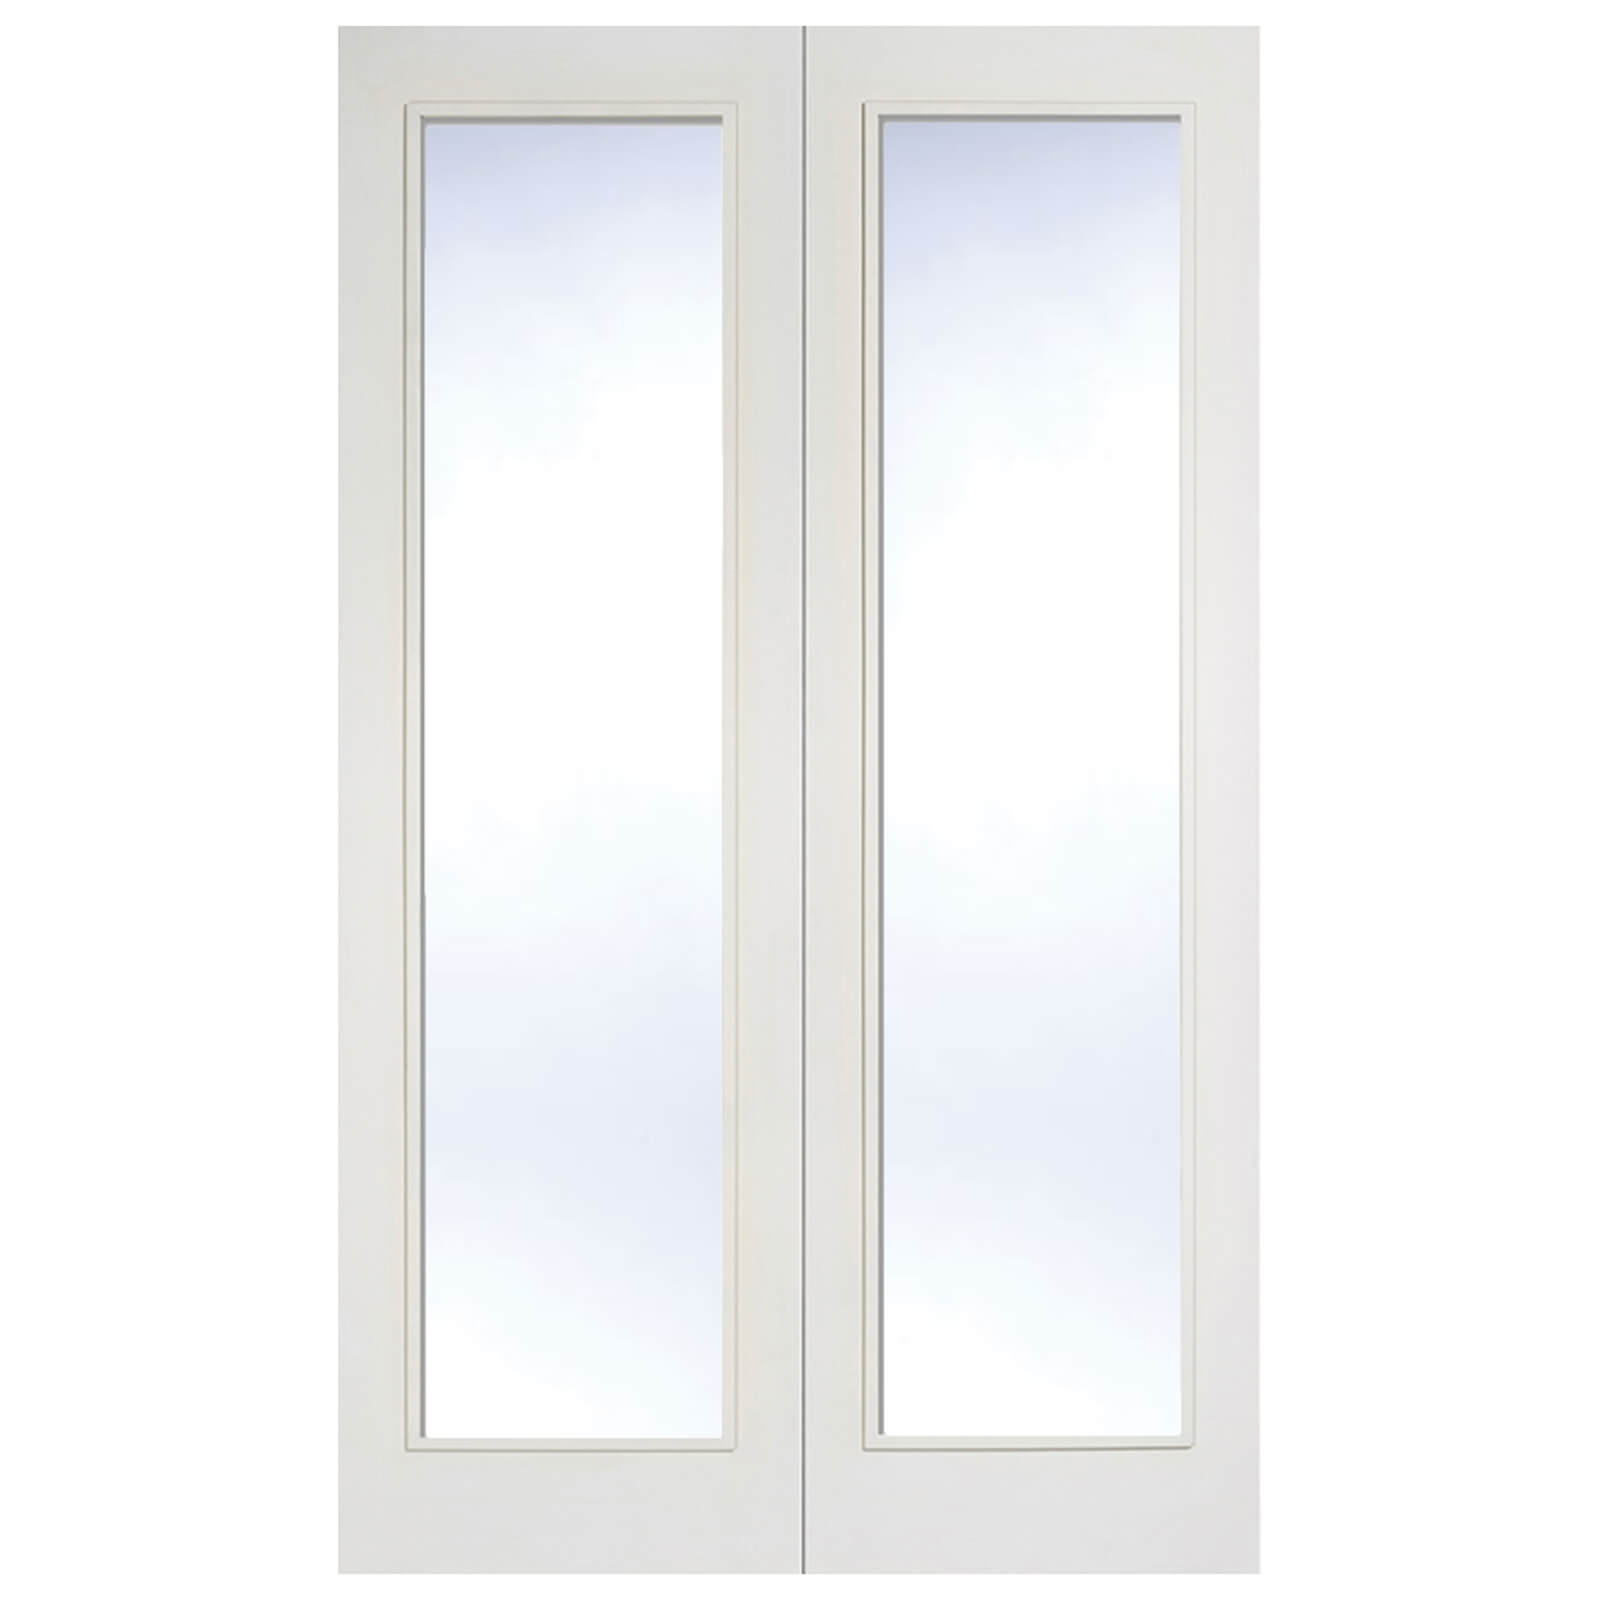 Pattern 20 Internal Glazed Primed White 1 Lite Pair Doors - 915 x 1981mm